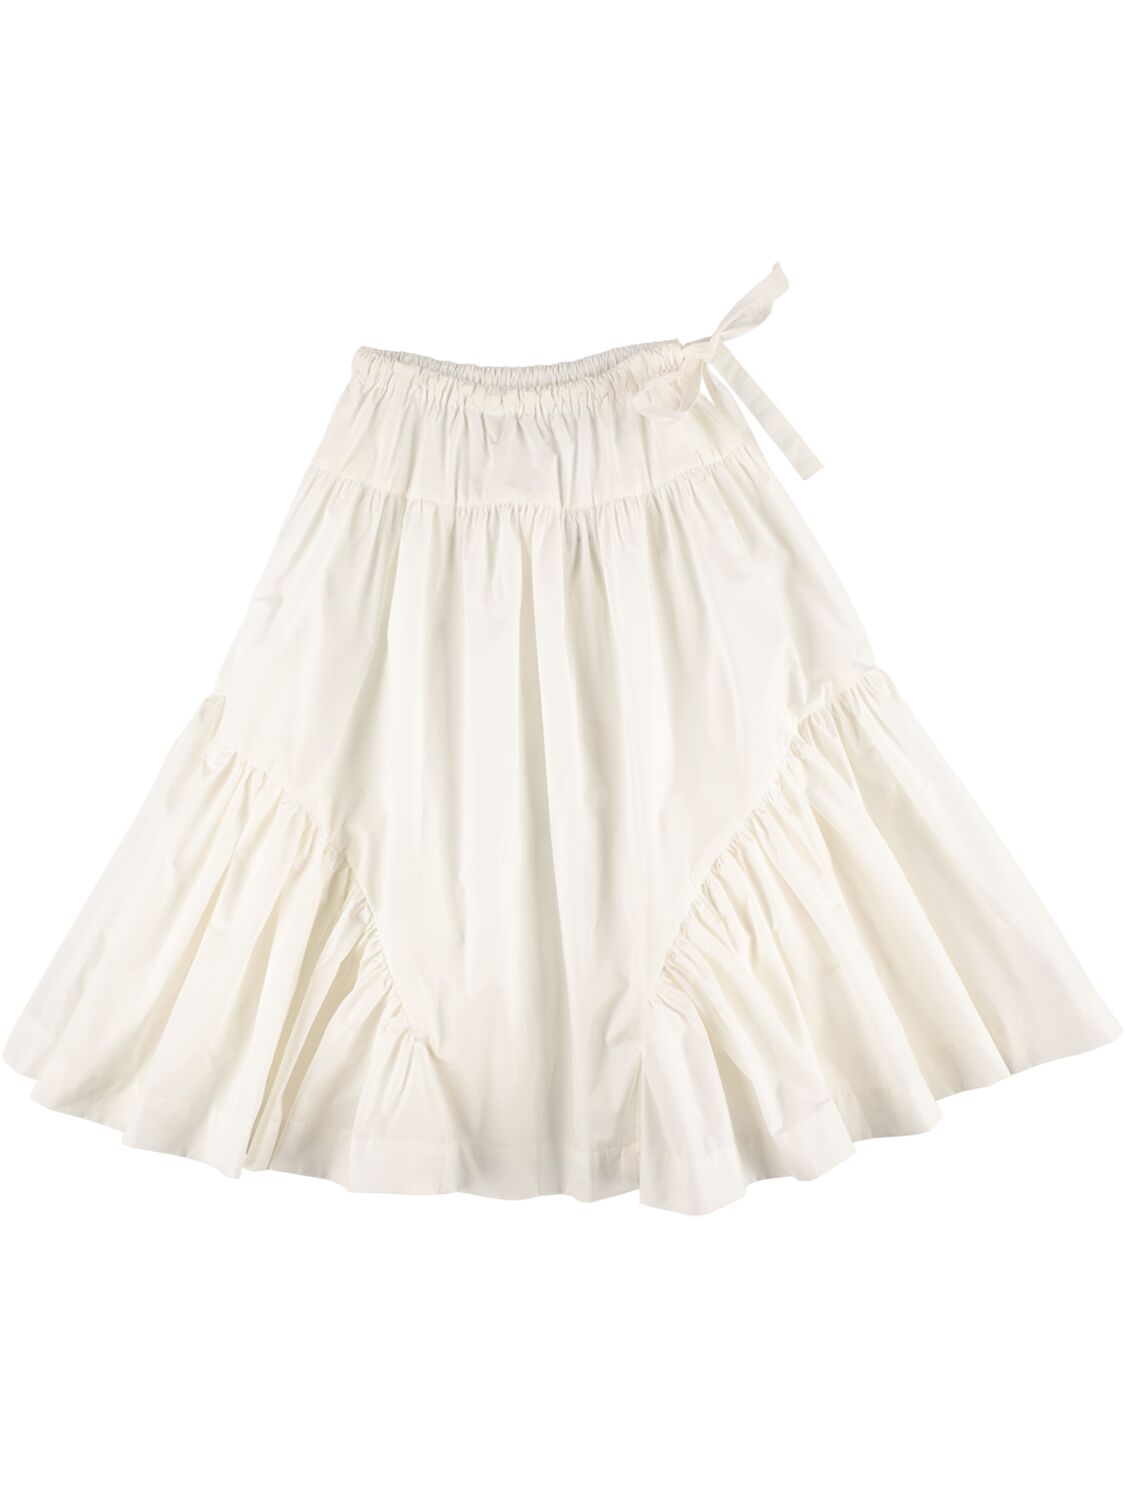 Unlabel Kids' Taffeta Long Skirt In White